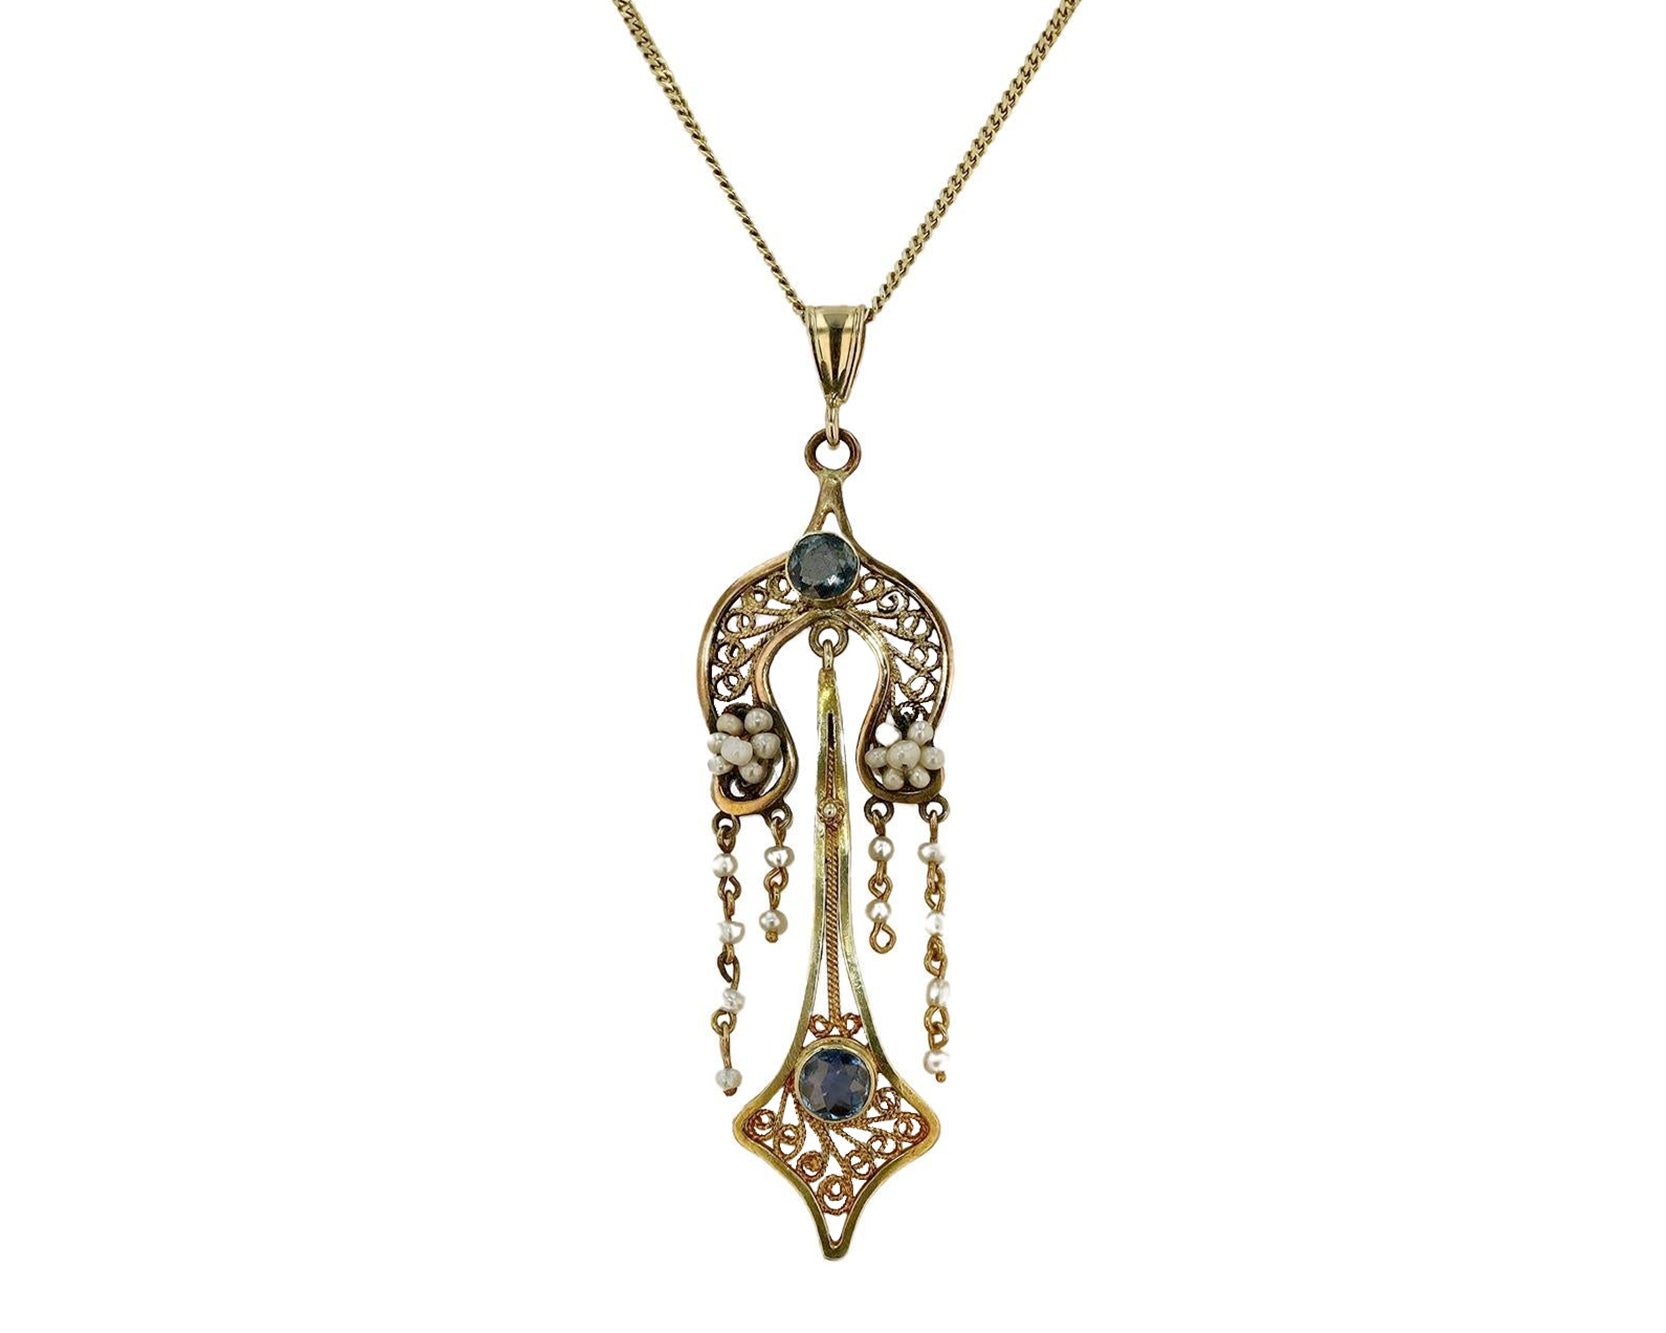 Antique Art Nouveau Necklace